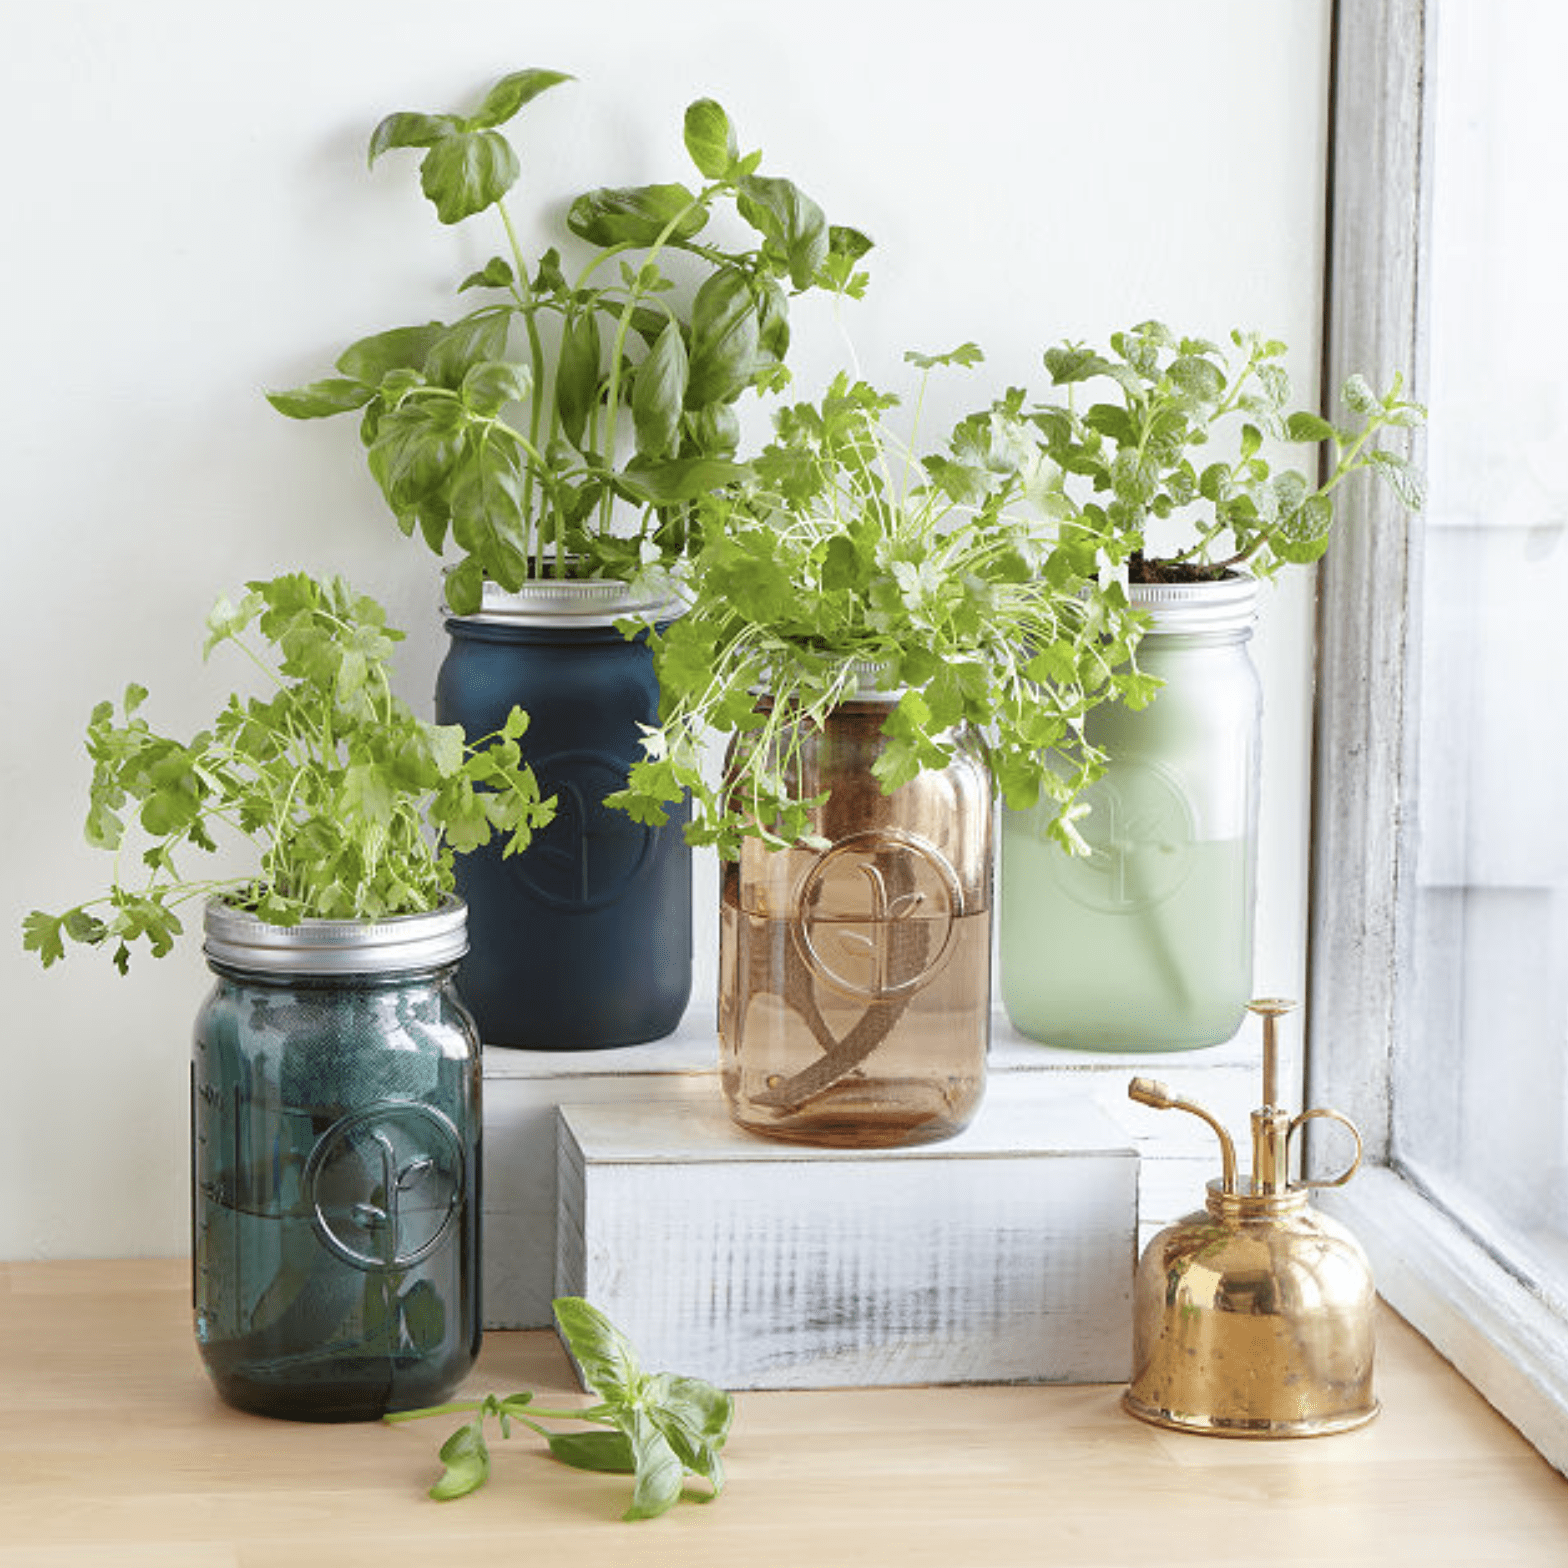 Mason Jar Indoor Herb Garden Ecomm Via Uncommongoods